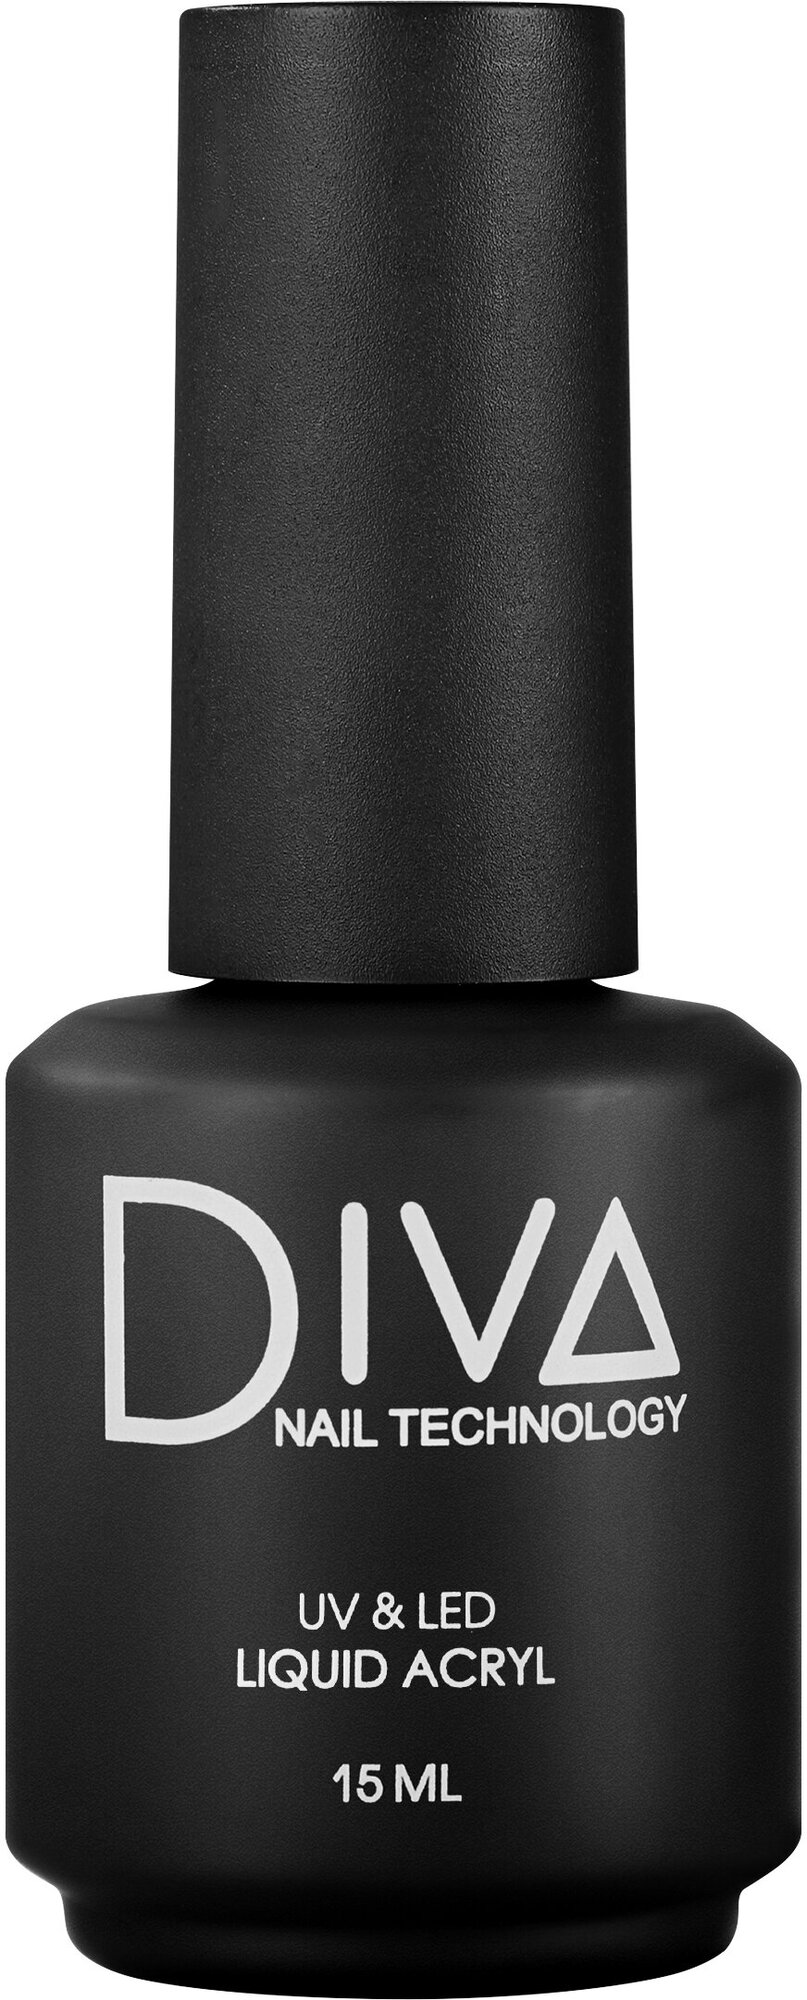 Жидкий акригель для наращивания ногтей Diva Nail Technology камуфляж темный бежевый, 15 мл